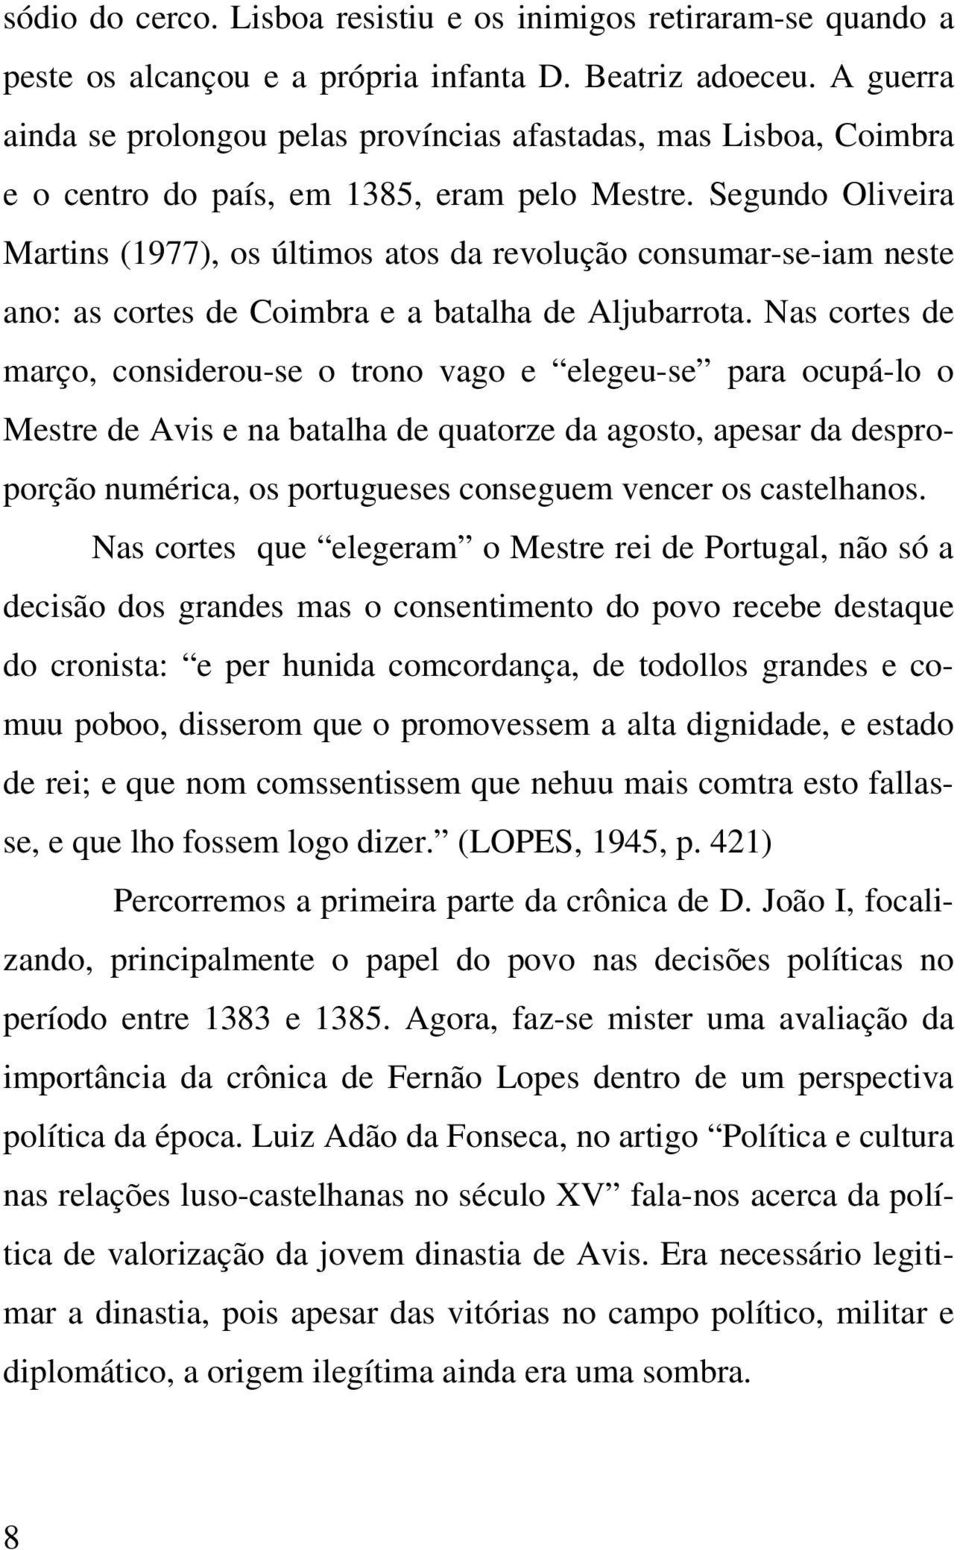 Segundo Oliveira Martins (1977), os últimos atos da revolução consumar-se-iam neste ano: as cortes de Coimbra e a batalha de Aljubarrota.